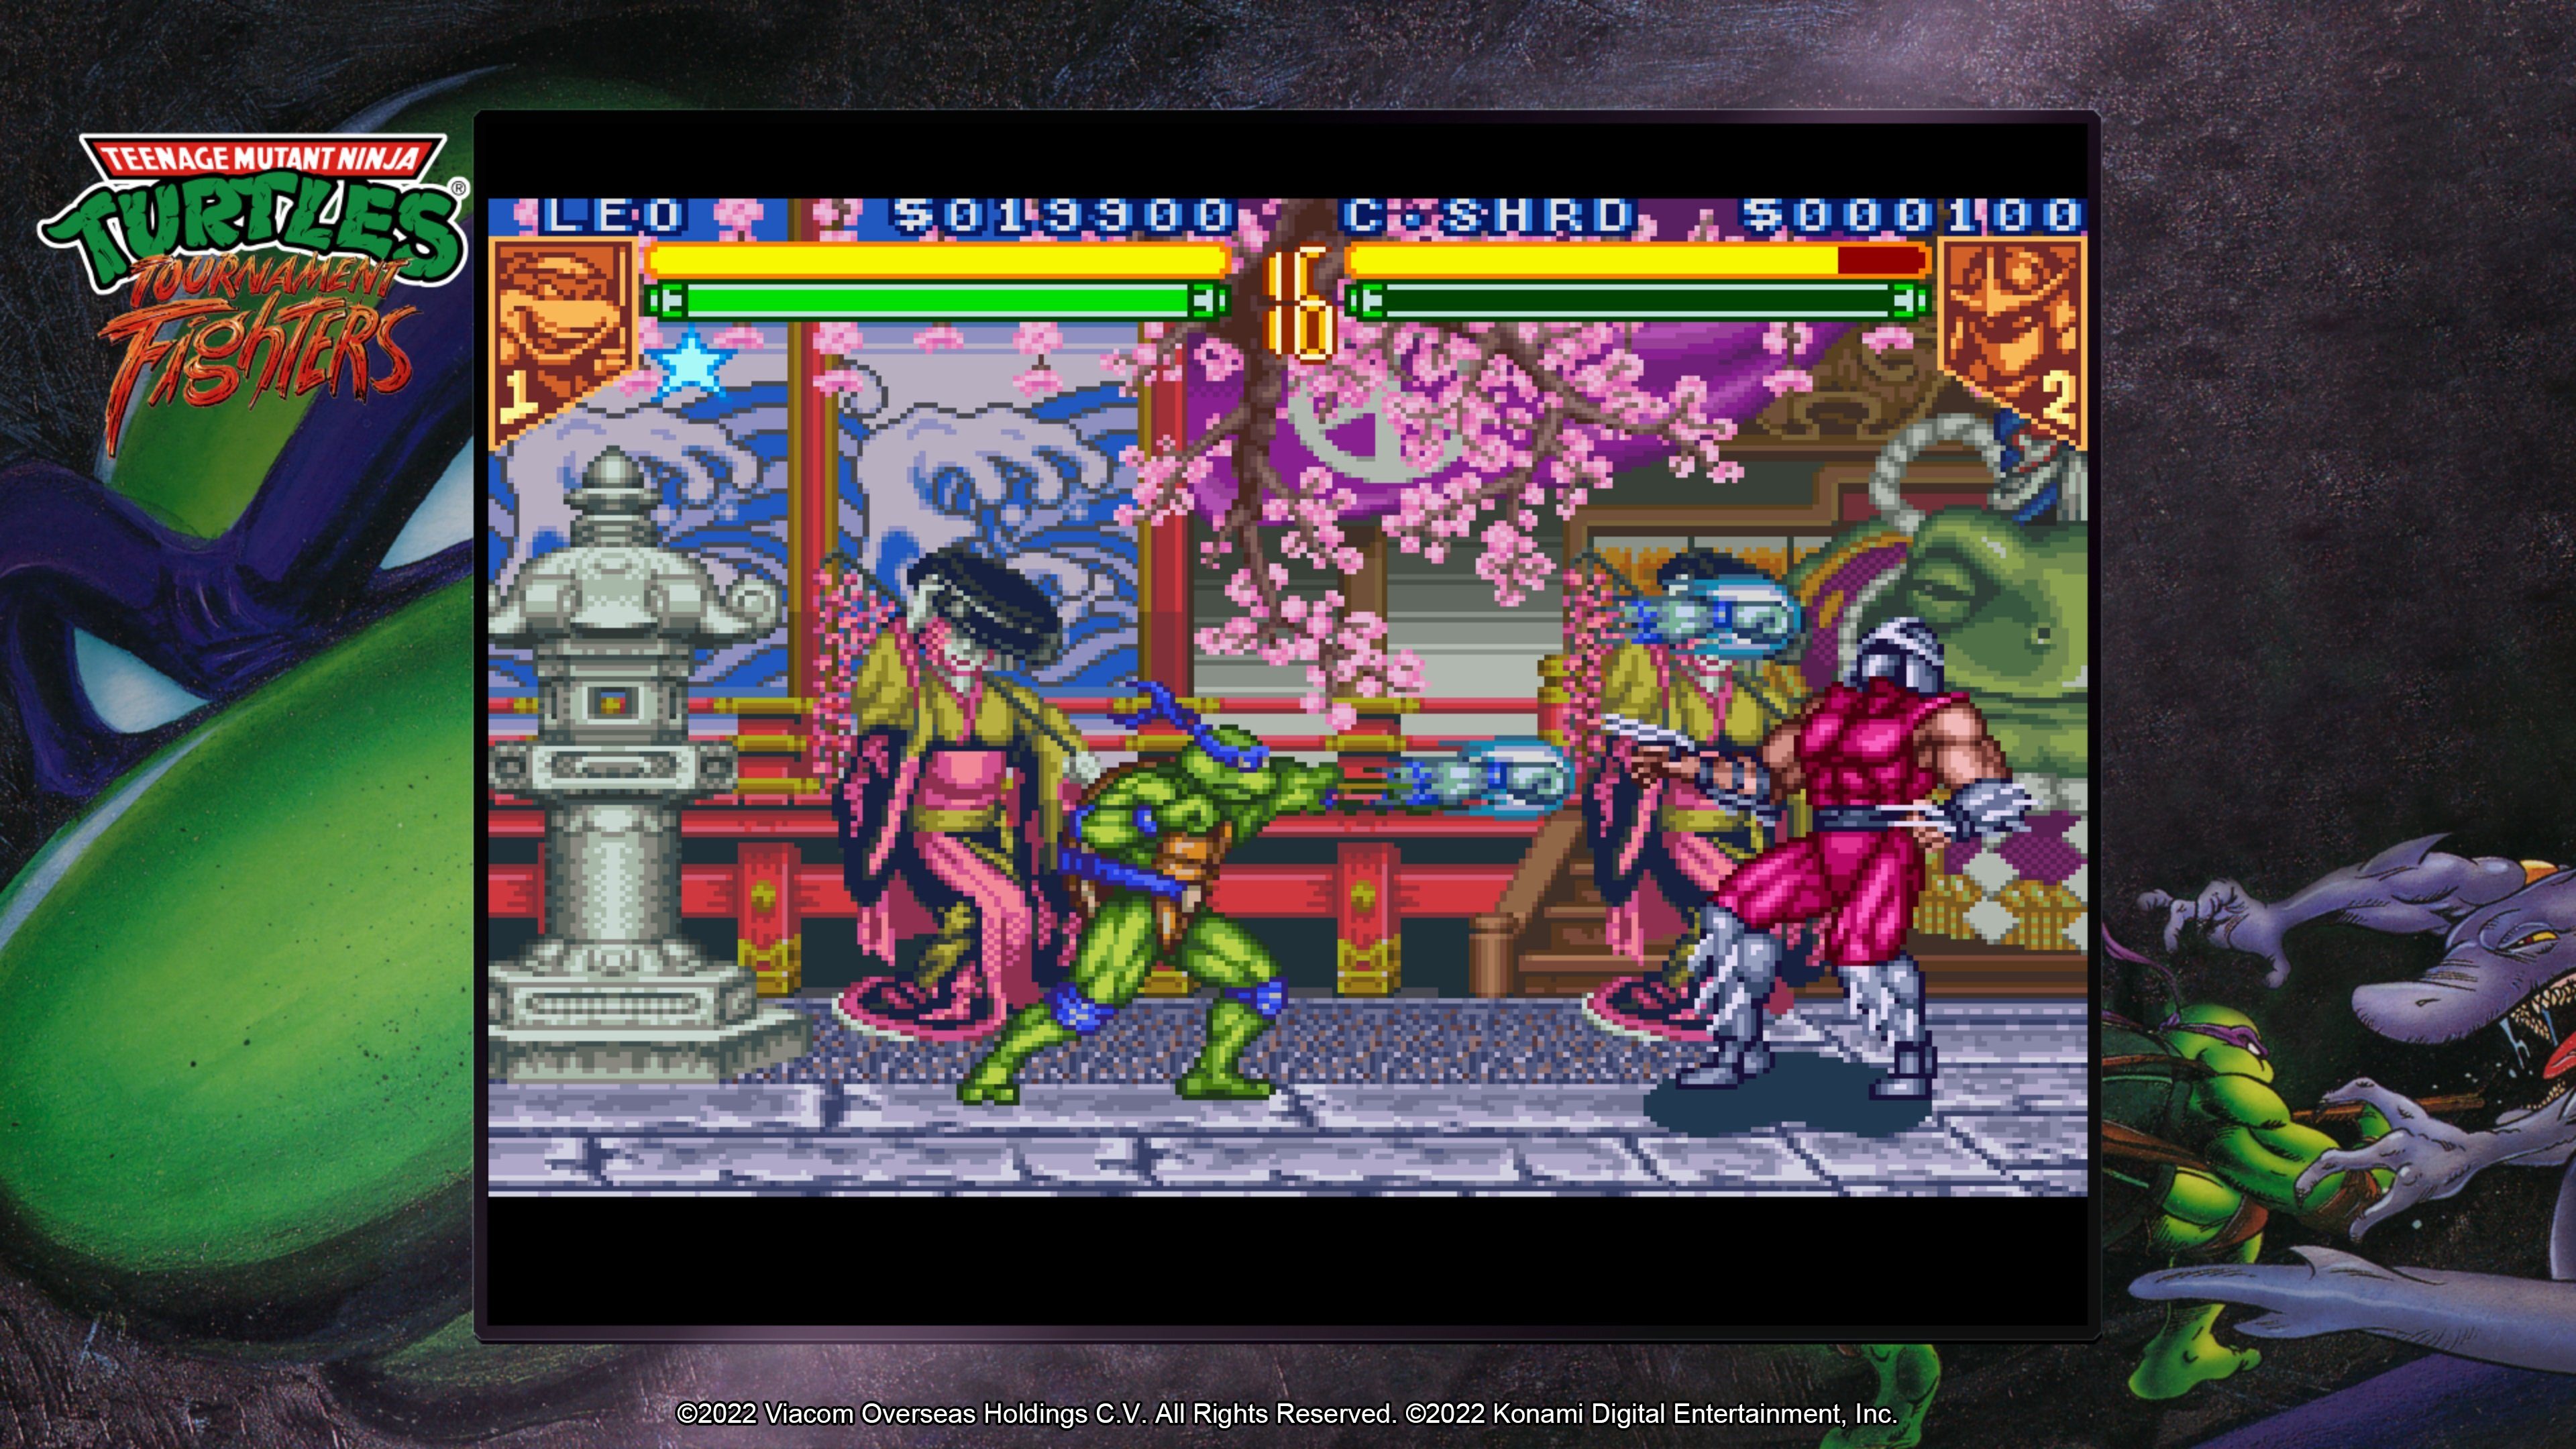 The Mutant 5 Konami Collection - Teenage Ninja Cowabunga Turtles PlayStation